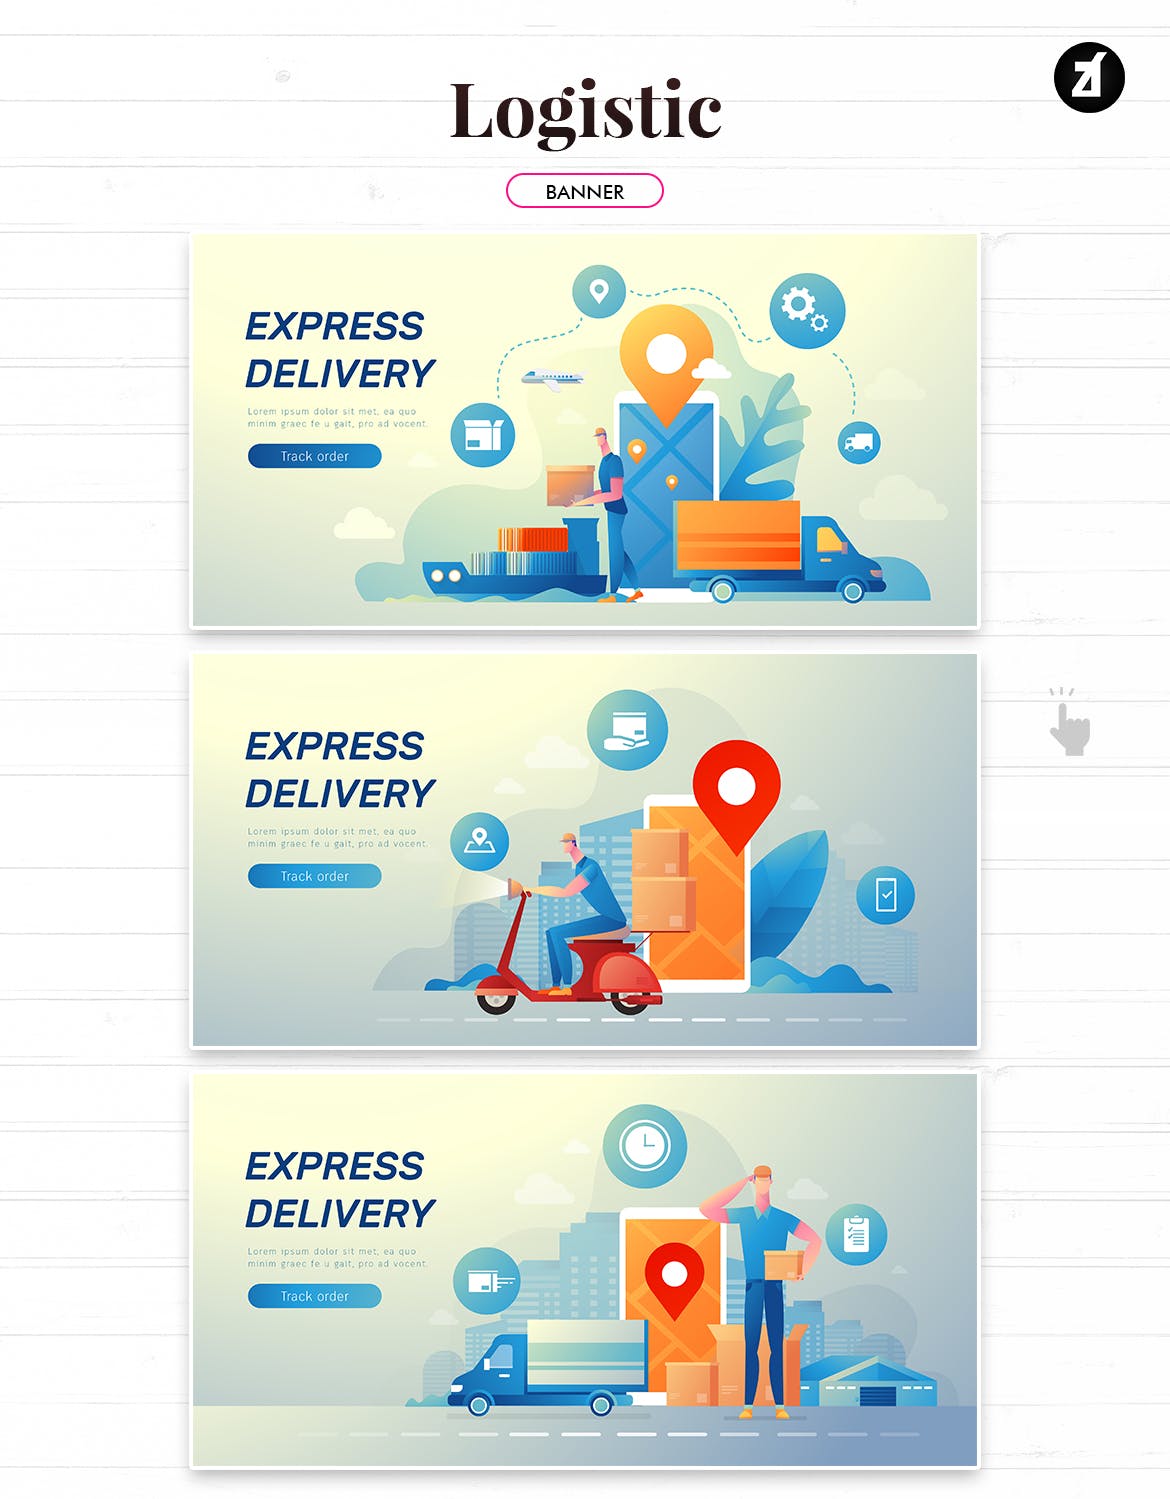 物流配送主题矢量插画设计素材 Logistic and delivery illustration with layout插图4